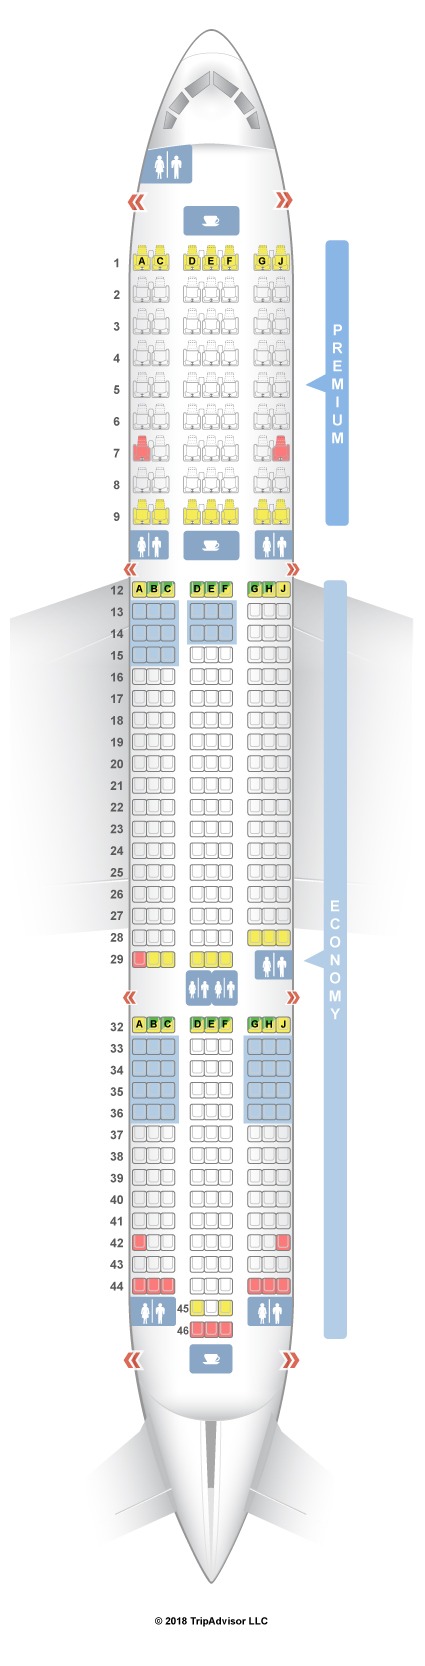 Dreamliner Seating Chart